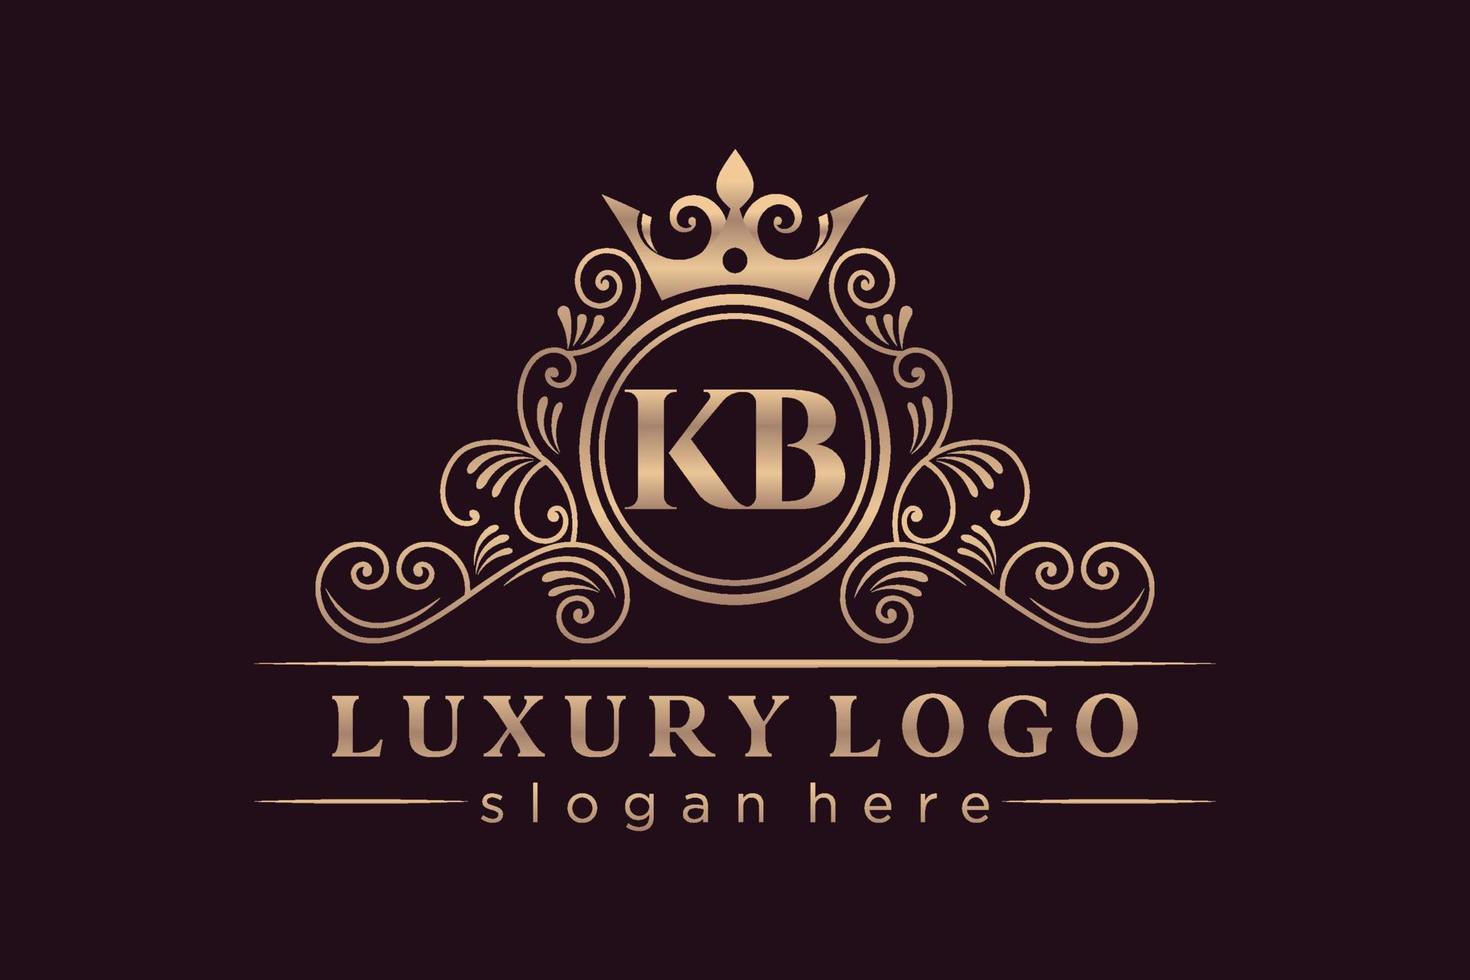 KB Initial Letter Gold calligraphic feminine floral hand drawn heraldic monogram antique vintage style luxury logo design Premium Vector